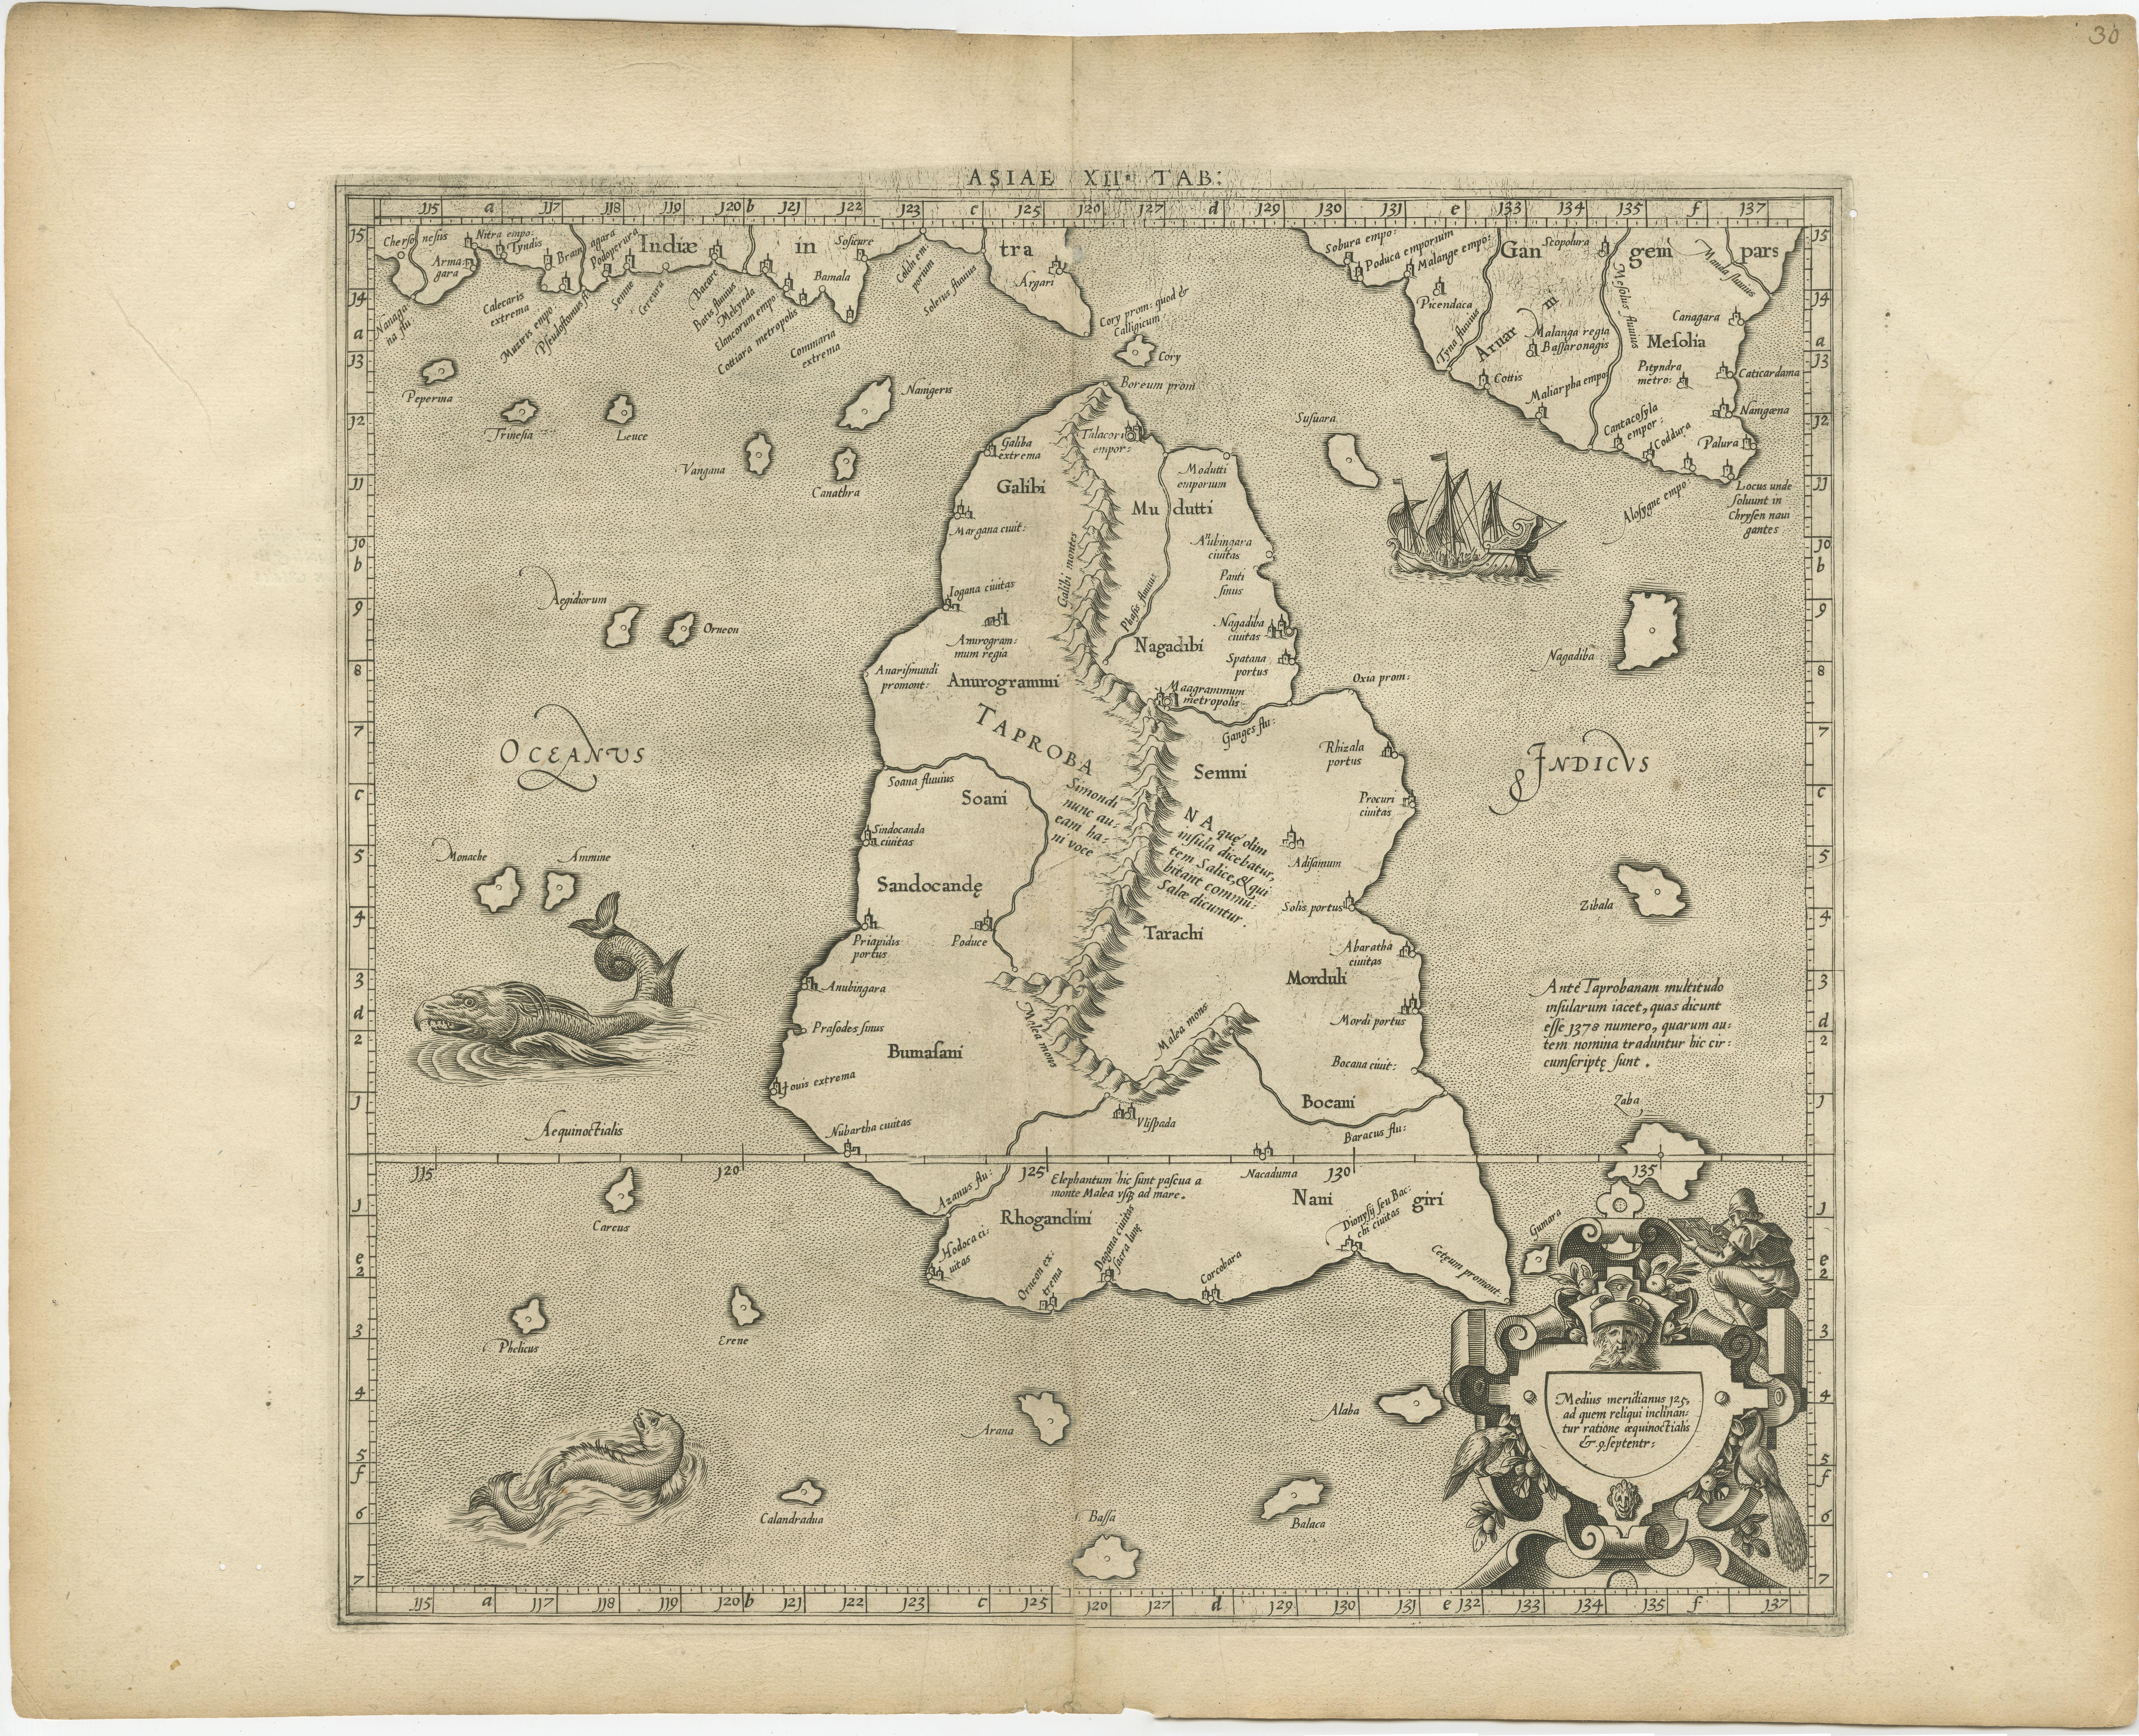 Antike Karte mit dem Titel 'Asiae XII Tab'. Mercators ptolemäische Karte von Taprobana. Die Karte zeigt, dass Ptolemäus die Insel Sri Lanka fälschlicherweise in der Nähe des Äquators verortet hat, wobei im Nordosten ein Stück Indien eingezeichnet